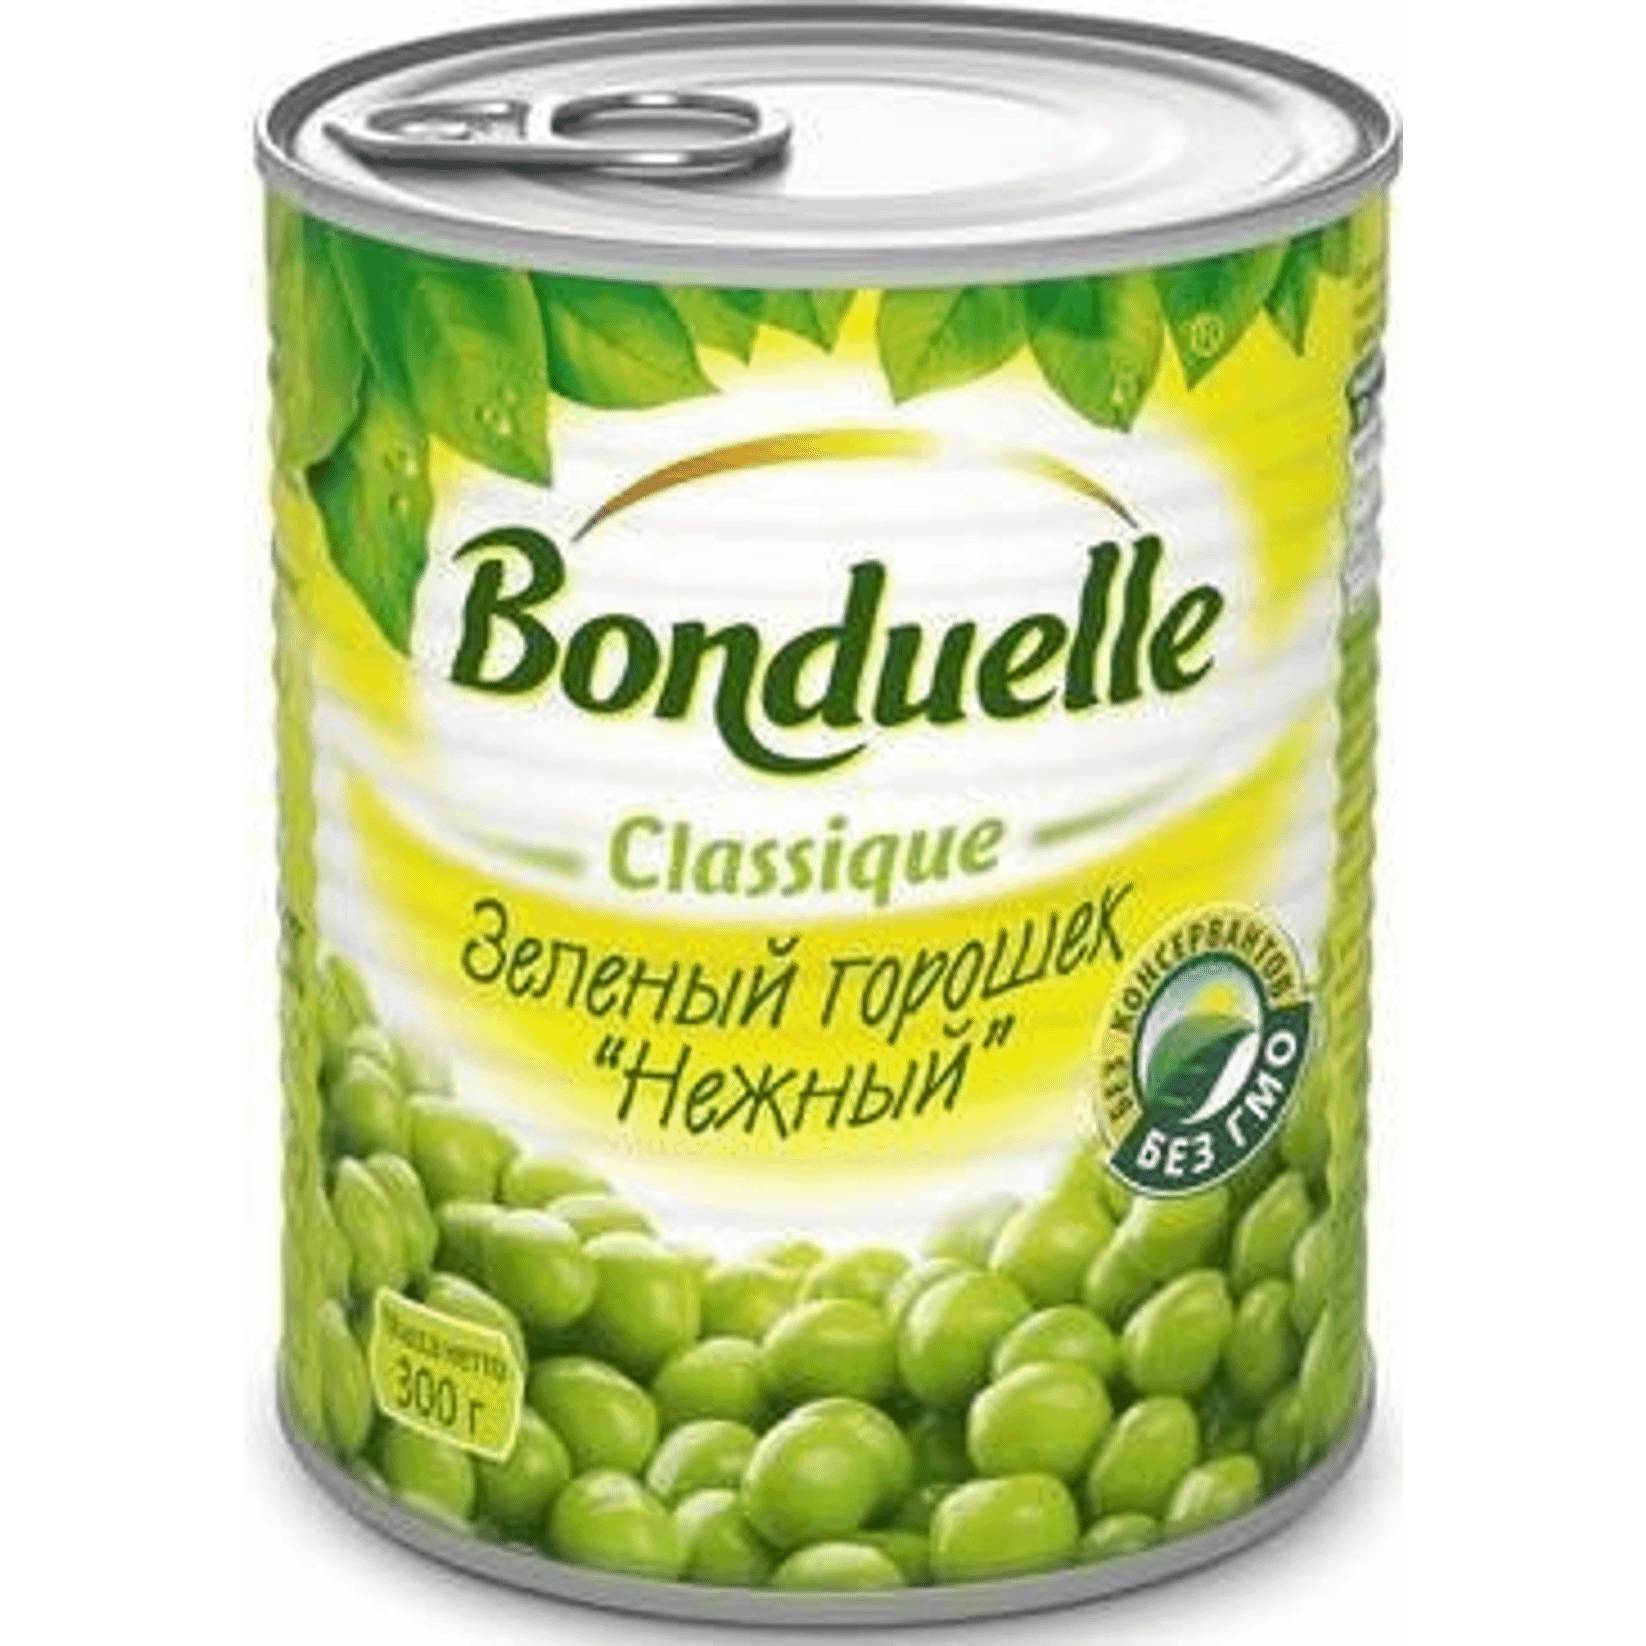 Зеленый горошек Bonduelle нежный, 350 г горошек зелёный bonduelle classique нежный 300 г